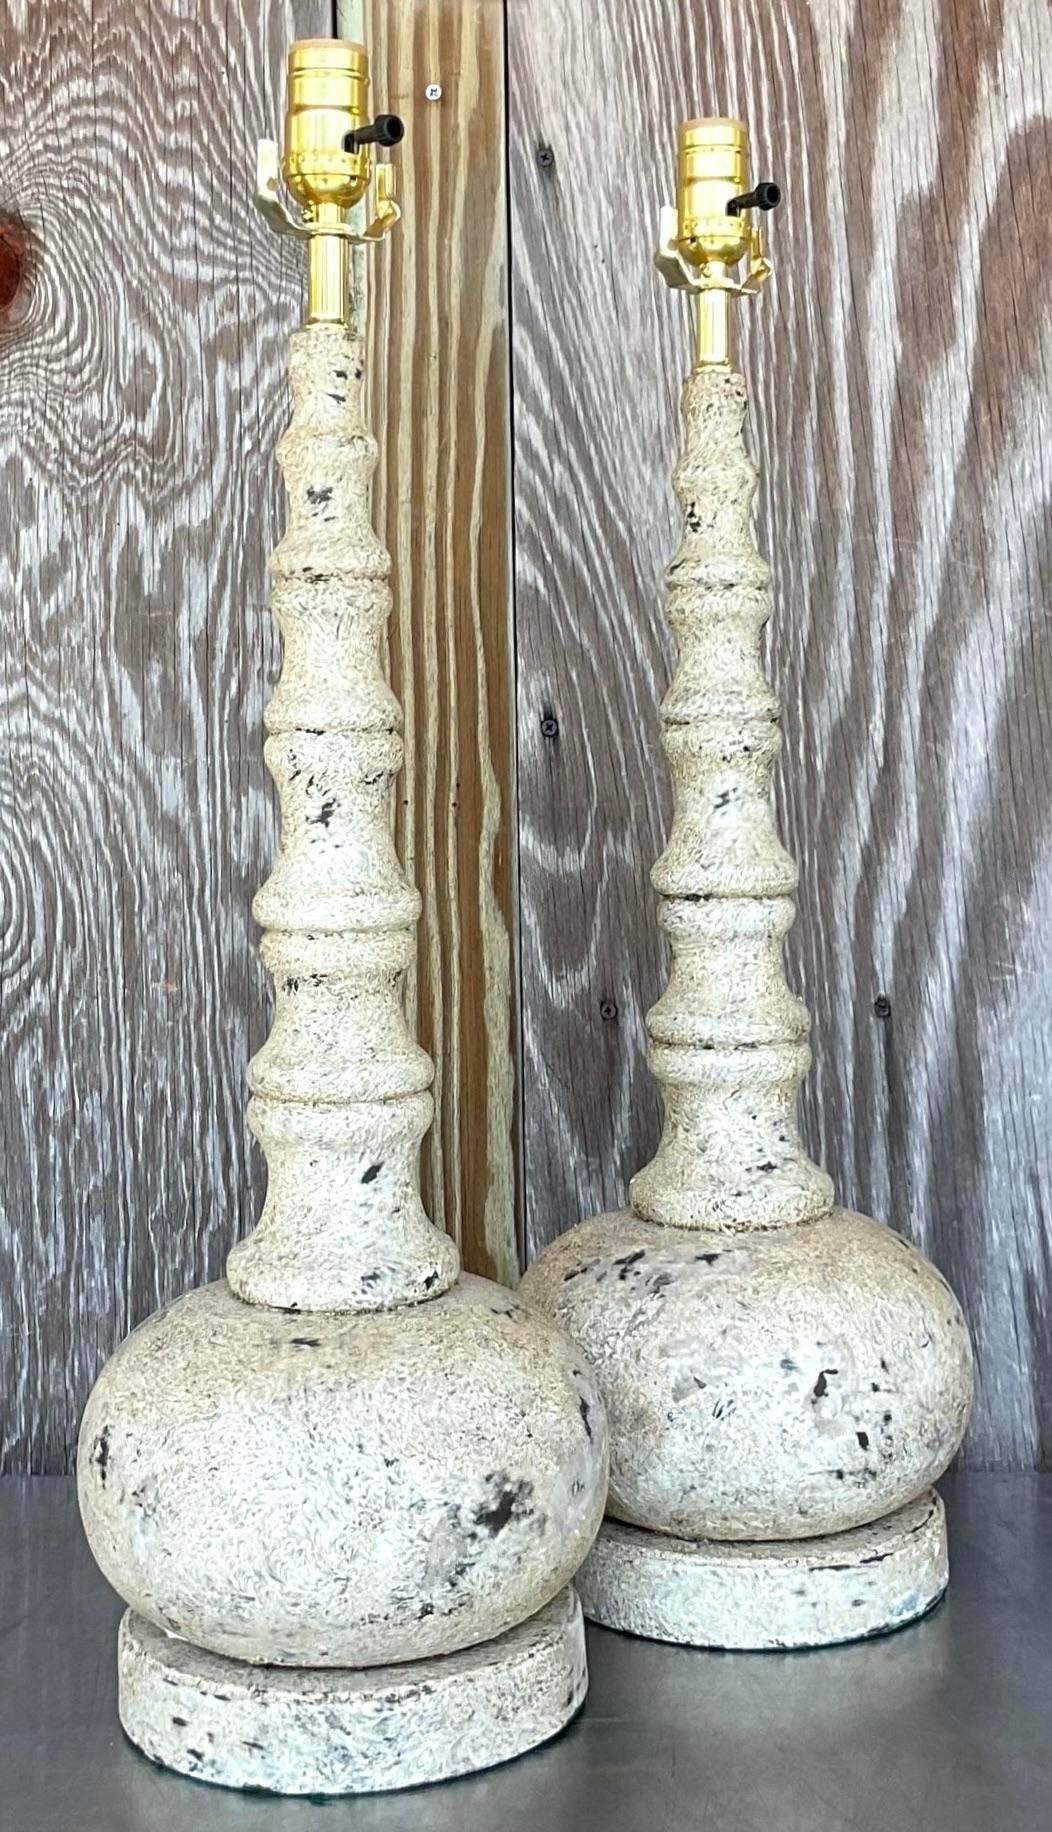 Beleuchten Sie Ihren Raum mit unseren Vintage Boho Patinated Long Neck Lamps - A Pair. Diese stilvollen Lampen haben eine einzigartige patinierte Oberfläche und ein langes Halsdesign, das böhmisches Flair mit amerikanischer Handwerkskunst verbindet.